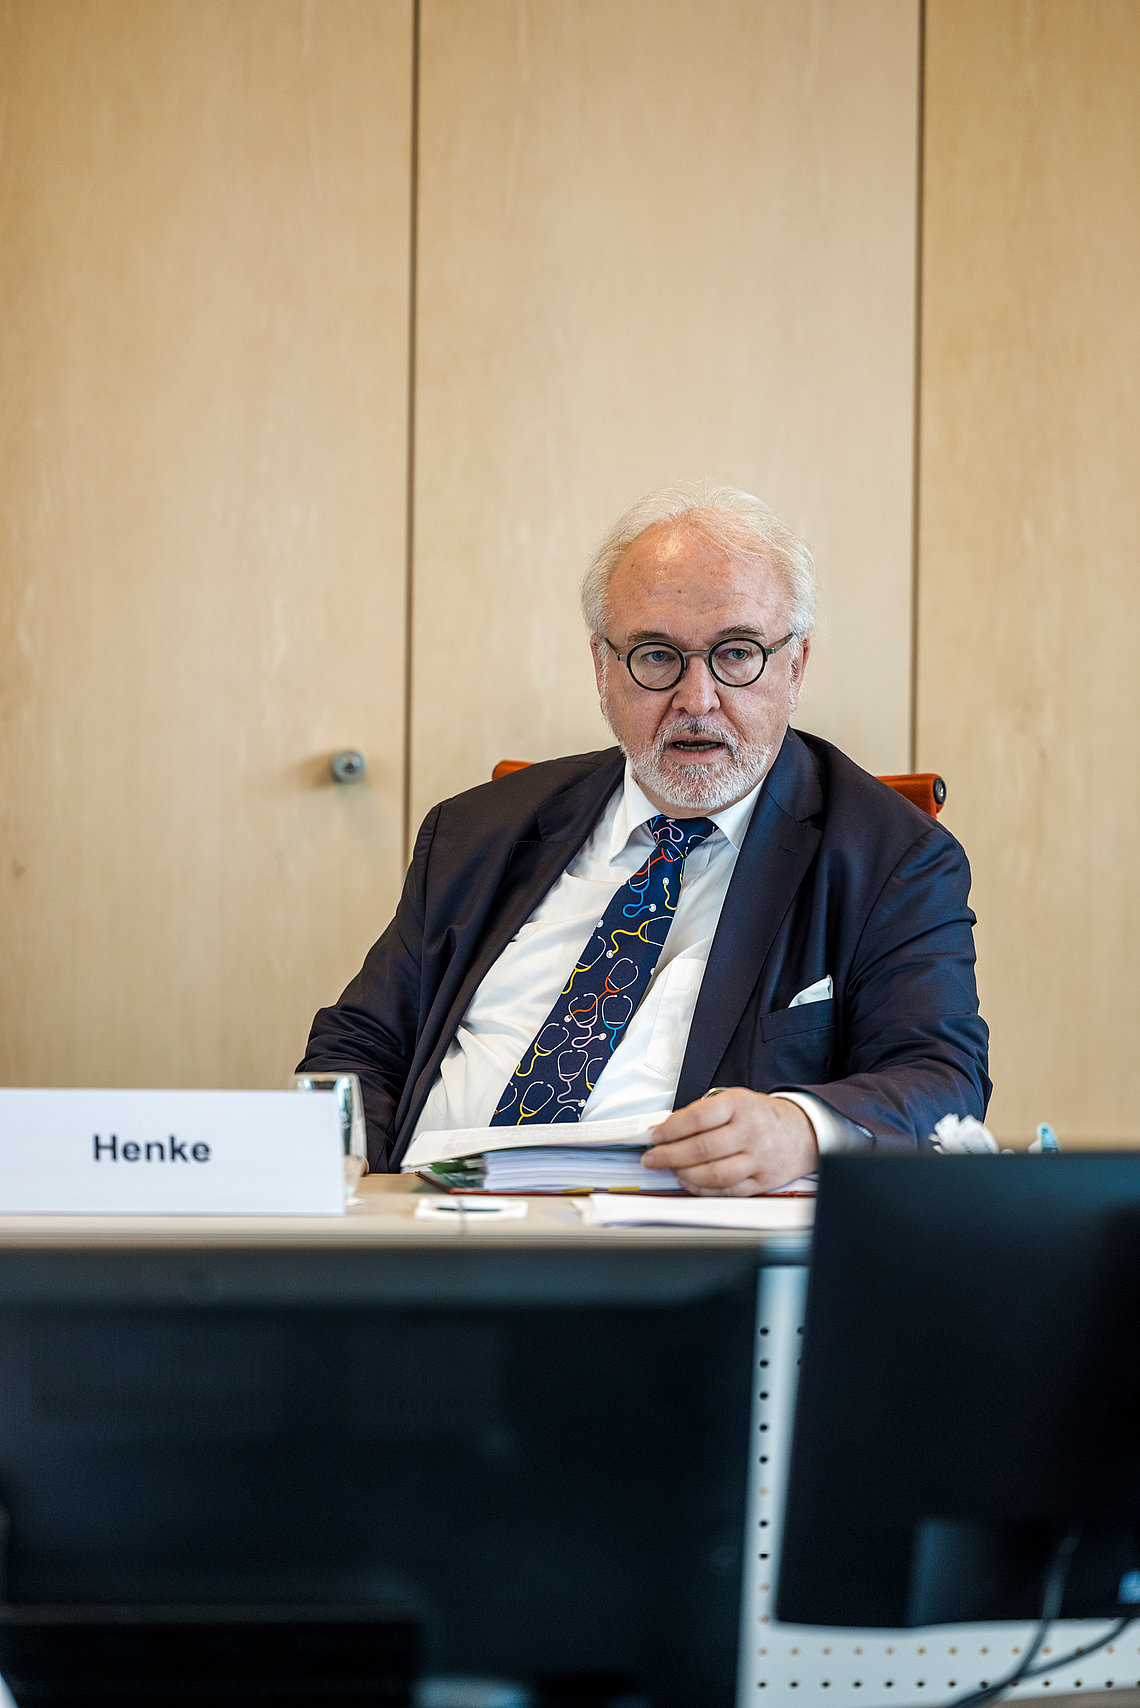 Rudolf Henke, Präsident der Ärztekammer Nordrhein in der Videokonferenz zur Kammerversammlung am 14.11.2020